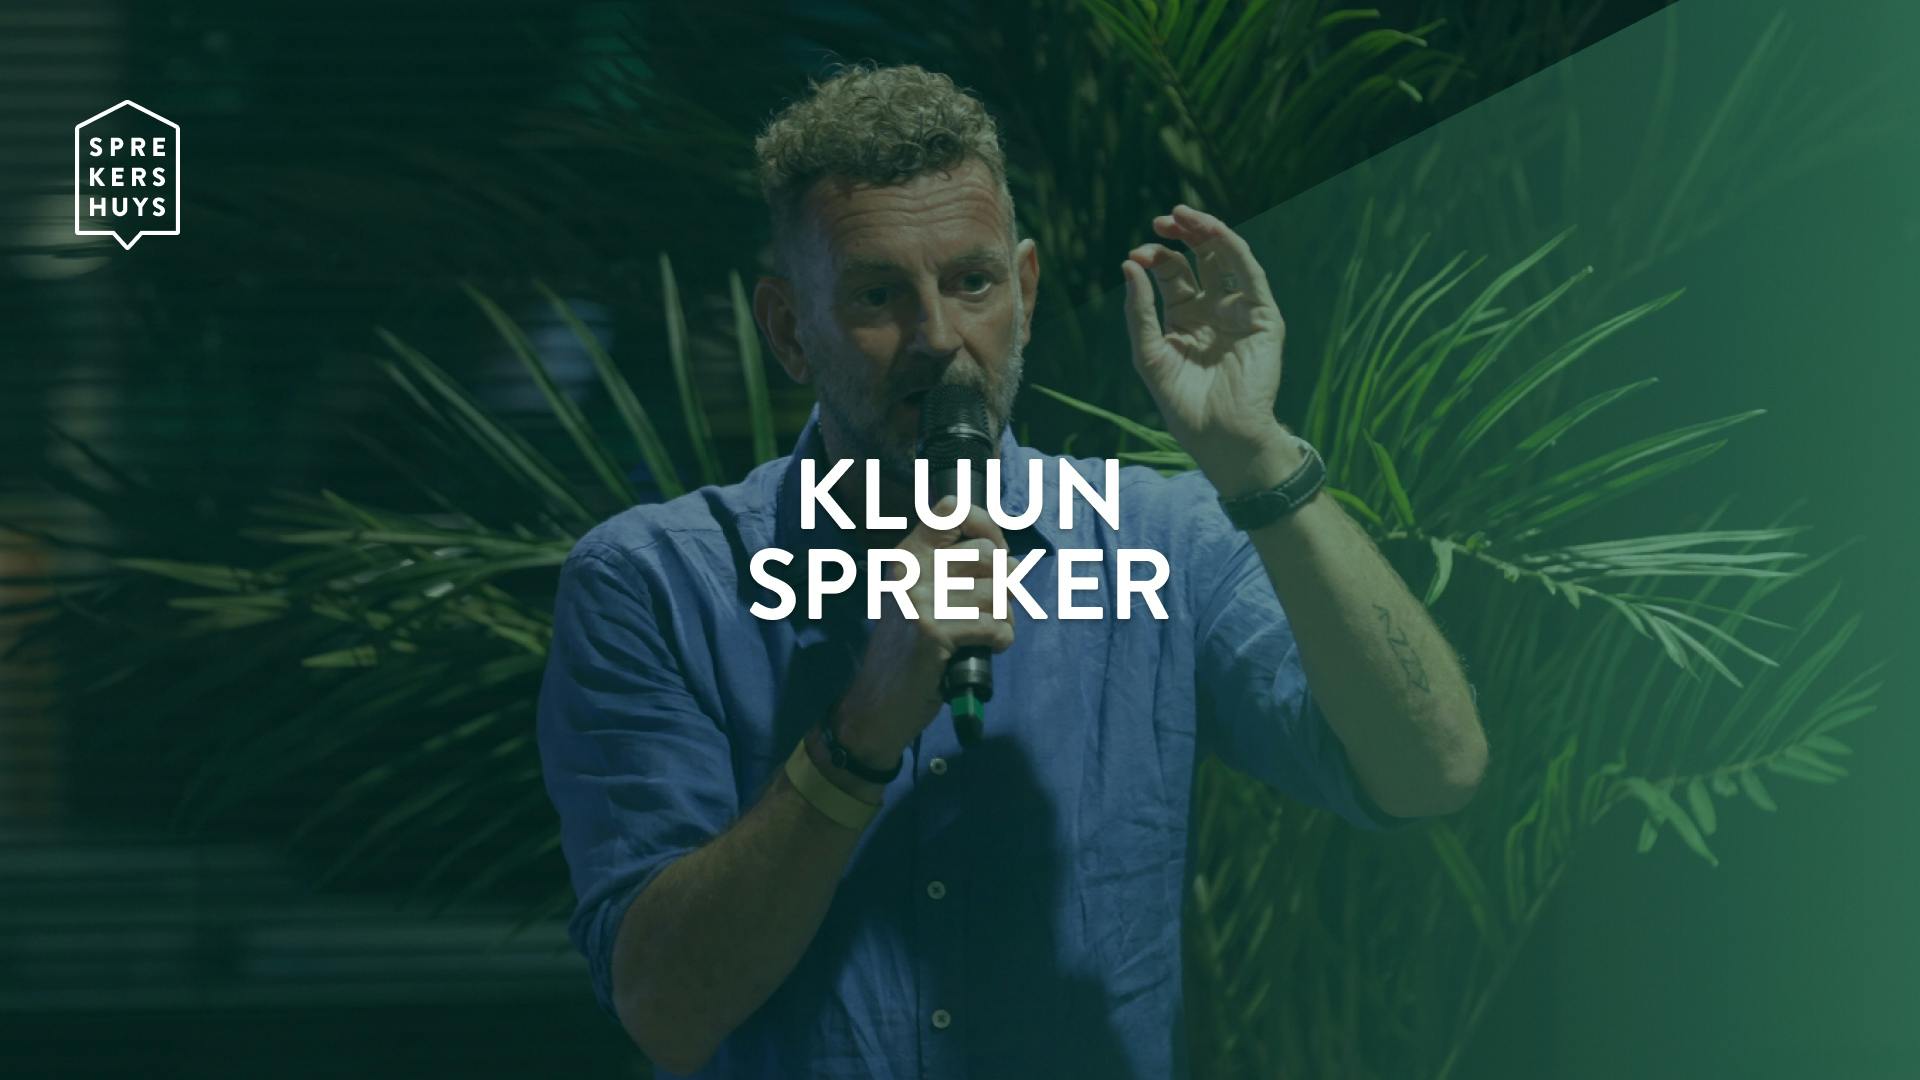 Kluun aan het spreken met een microfoon waarbij de tekst 'Kluun Spreker' in beeld staat met een groene kleur erover heen en het Sprekershuys logo linksboven in